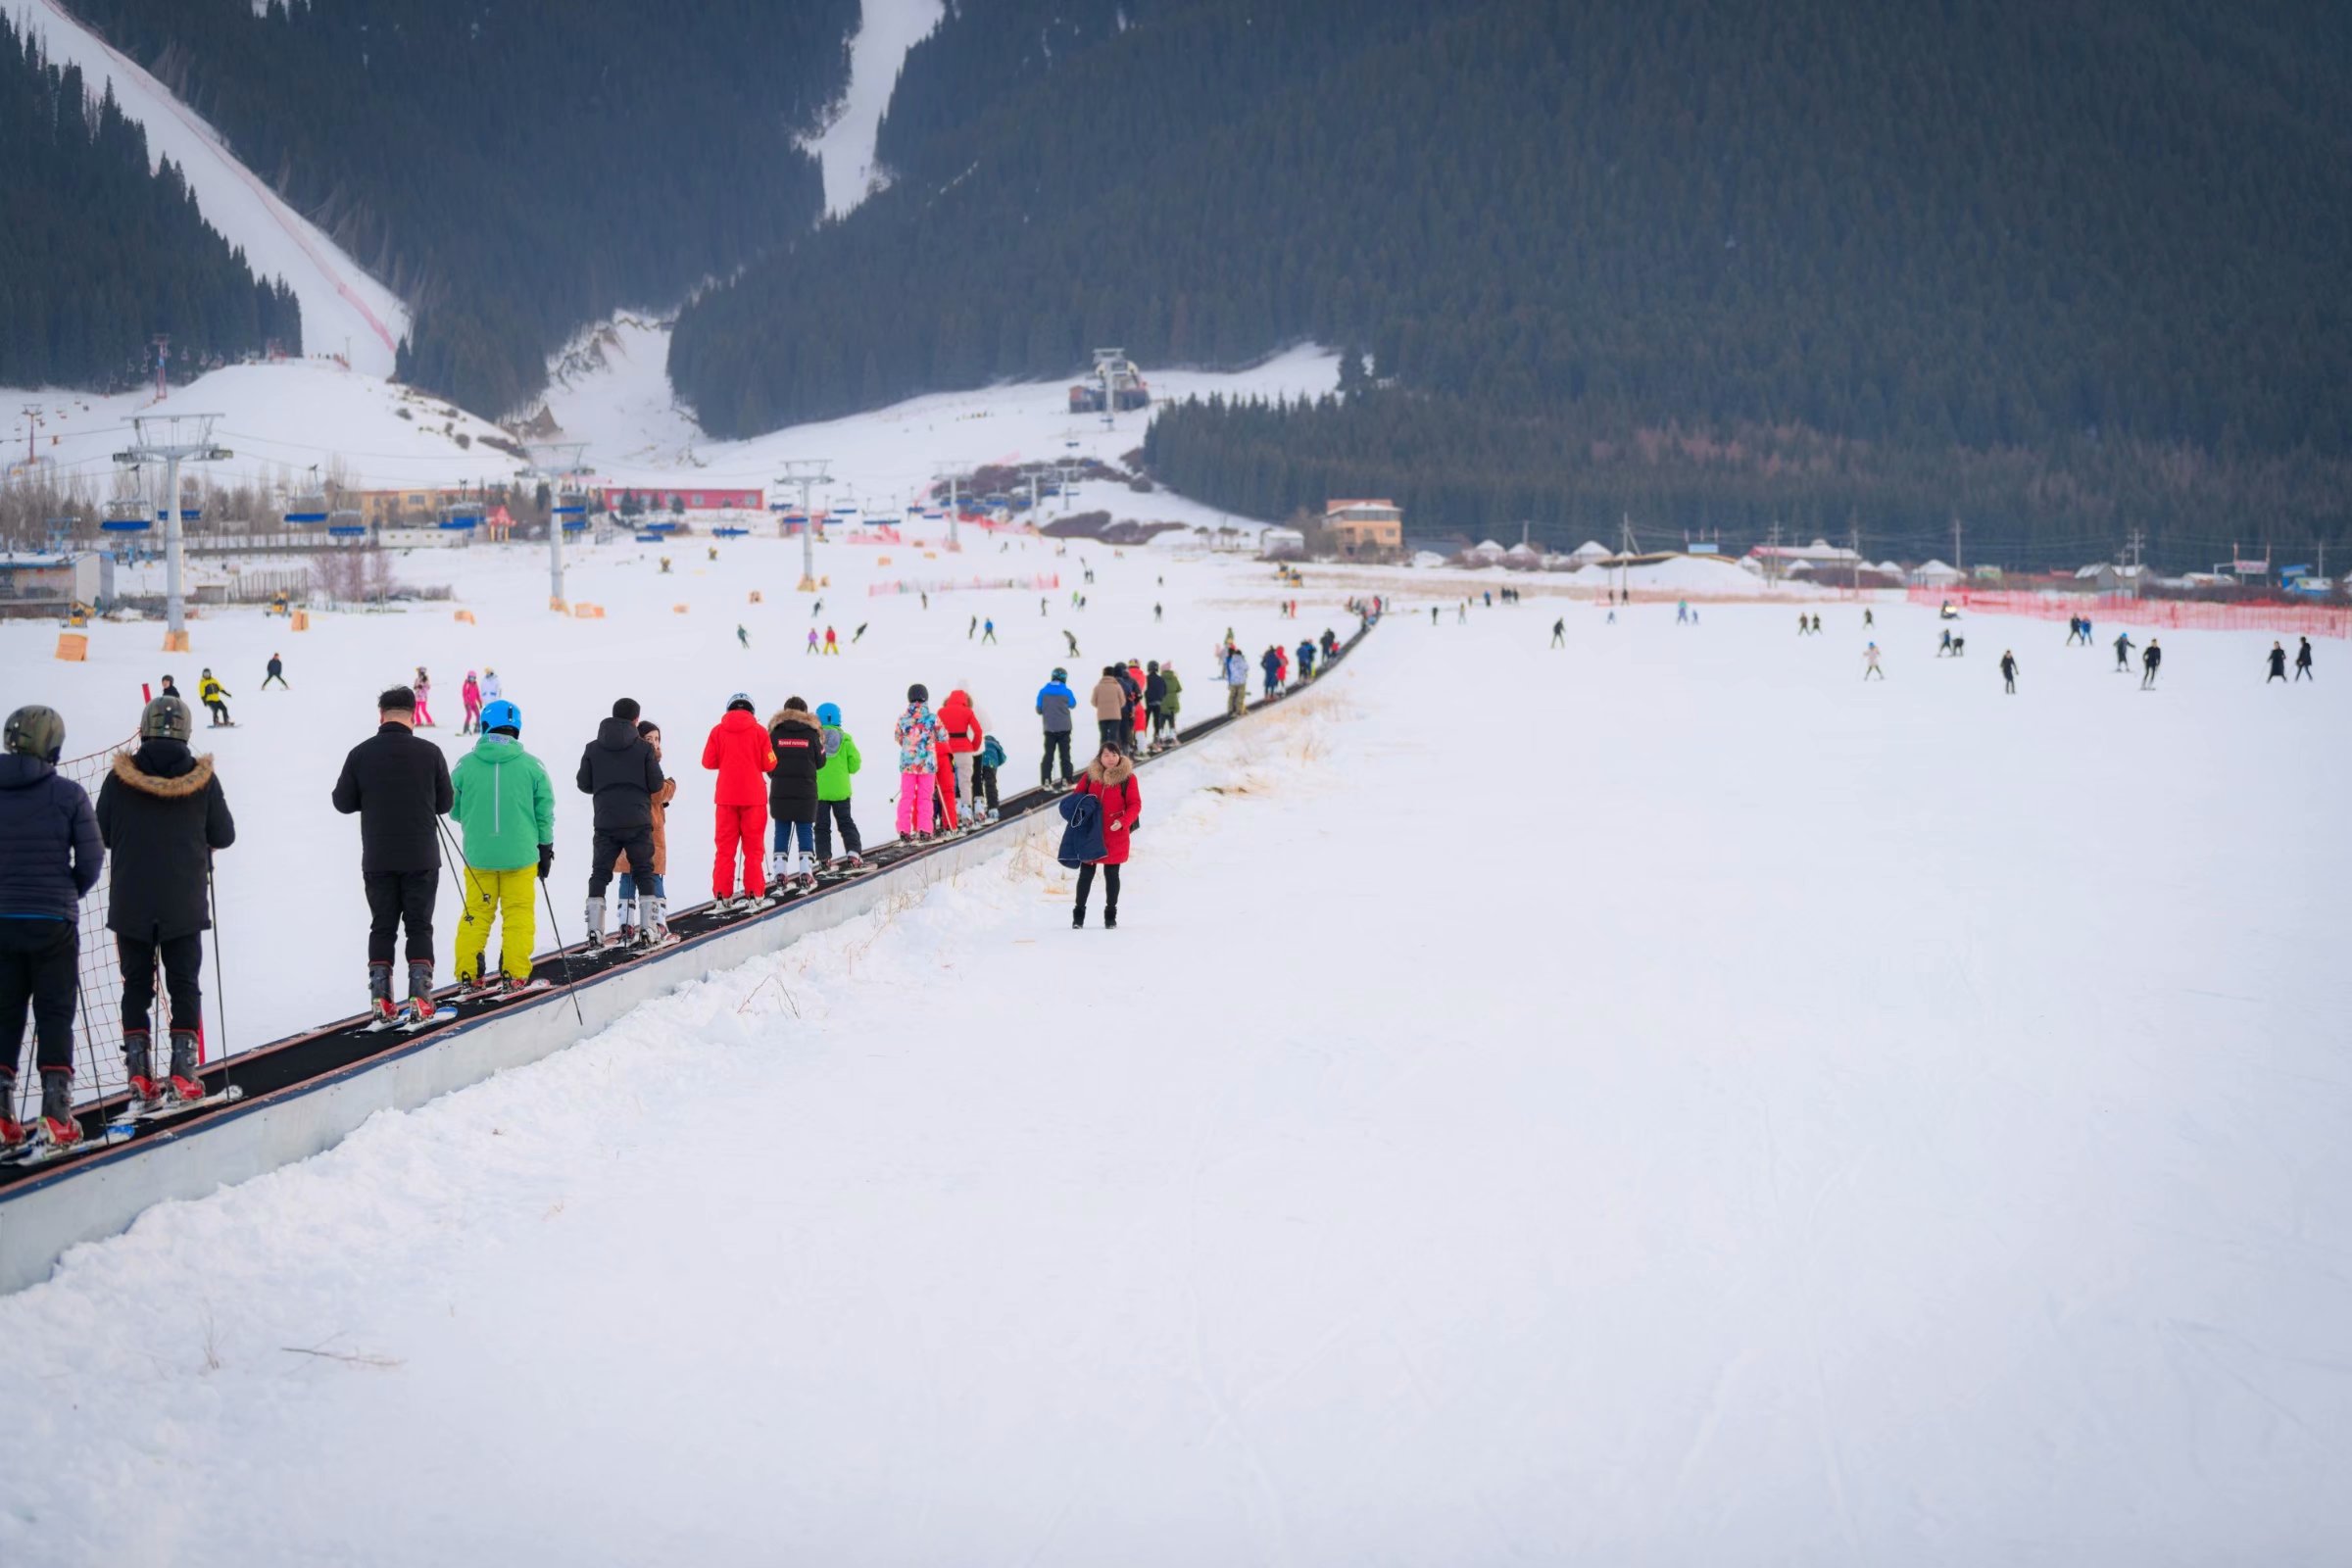 滑雪场建于国家著名景区内部,坐落于 天山山脉,距乌鲁木齐城南38公里